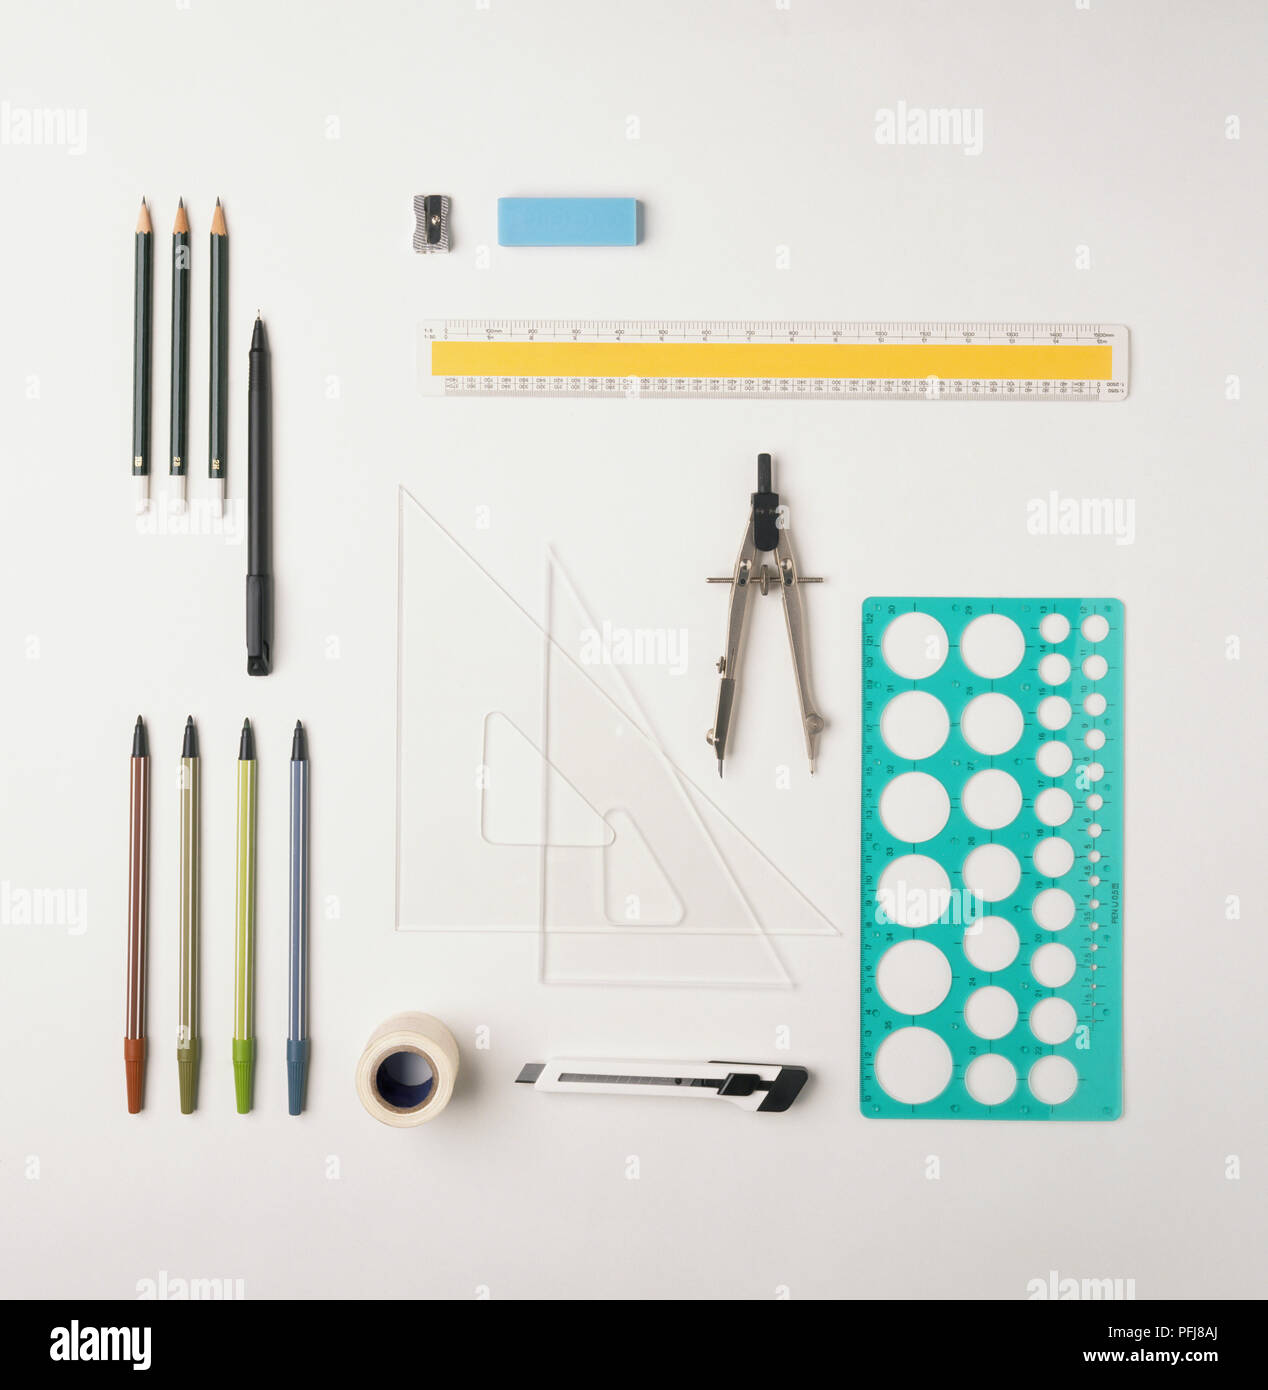 Lineal, Kompass, Messer, Schablone, Kugelschreiber, Bleistifte, Anspitzer, Radiergummi, Kunststoff rechtwinklige Dreiecke, Selbstklebeband, Teppichmesser, Ansicht von oben. Stockfoto